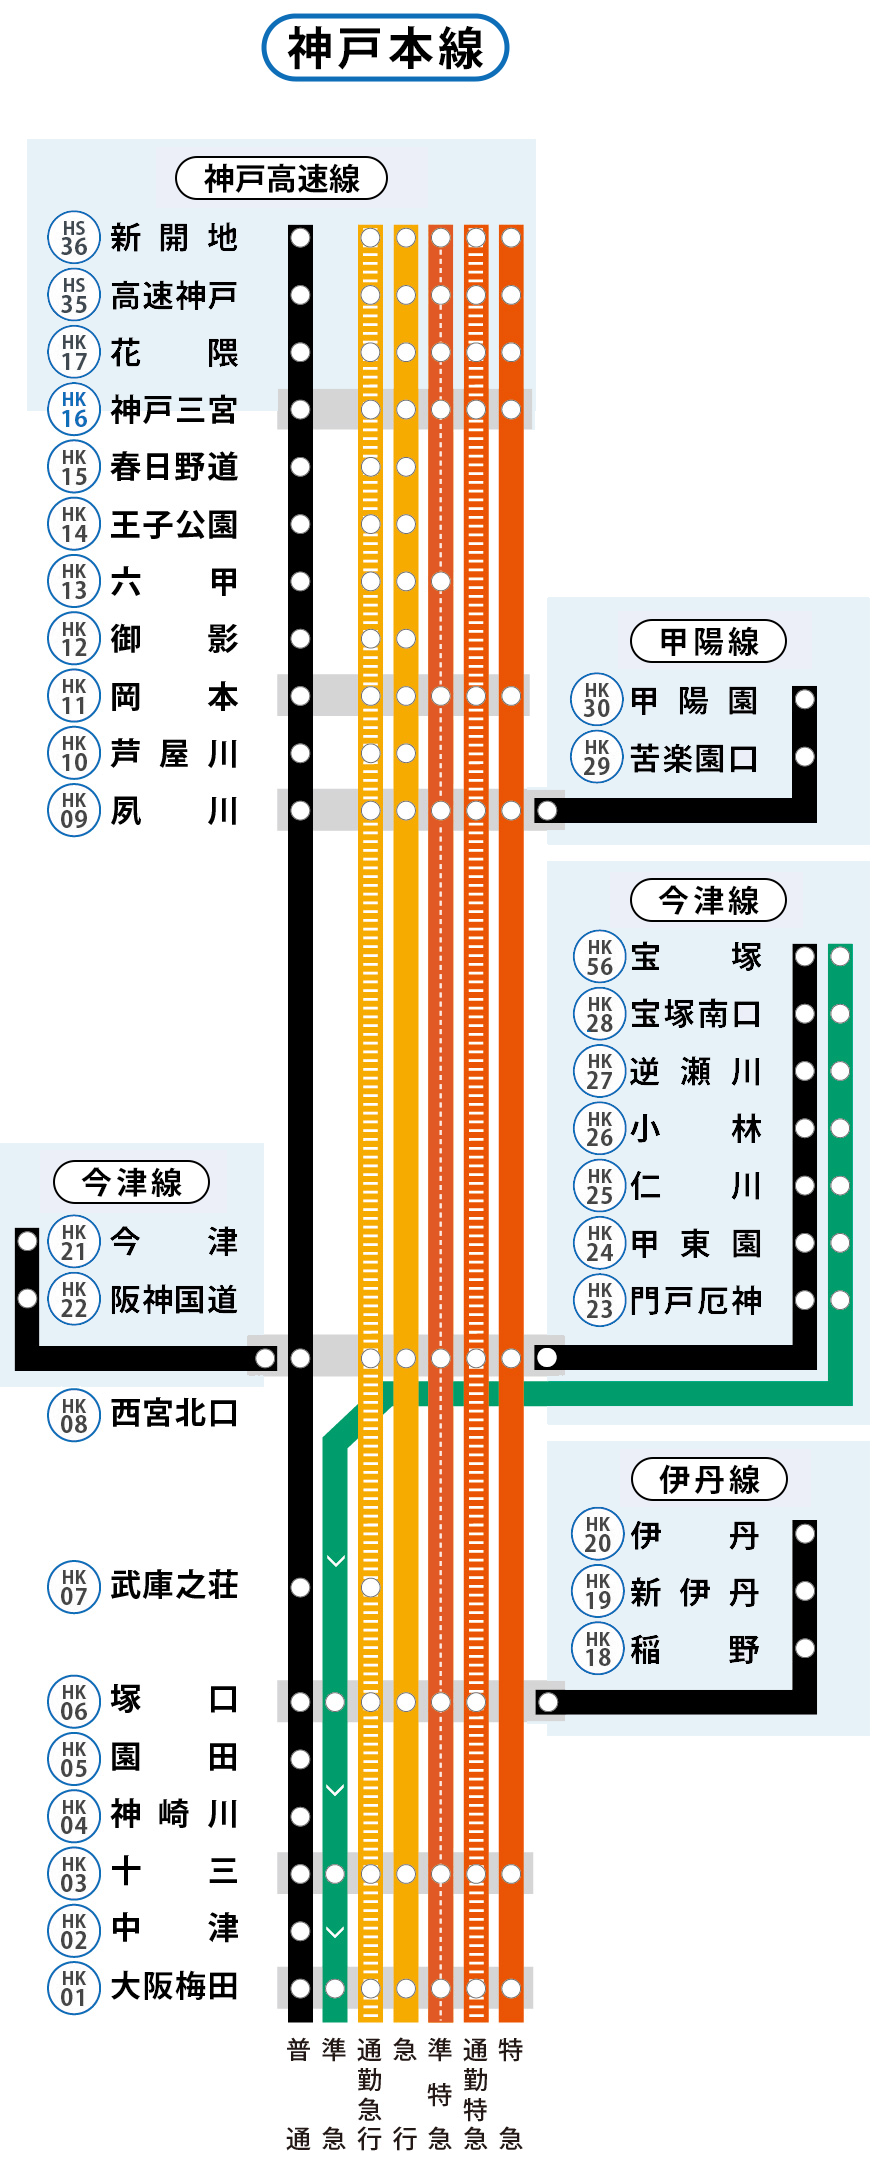 神戸線は神戸本線・伊丹線・会津線・甲陽線・神戸高速線から構成されています。
  神戸各駅の列車発車時刻や停車駅は、ページ下部の「駅を探す」から、各駅の時刻表ページをご確認ください。